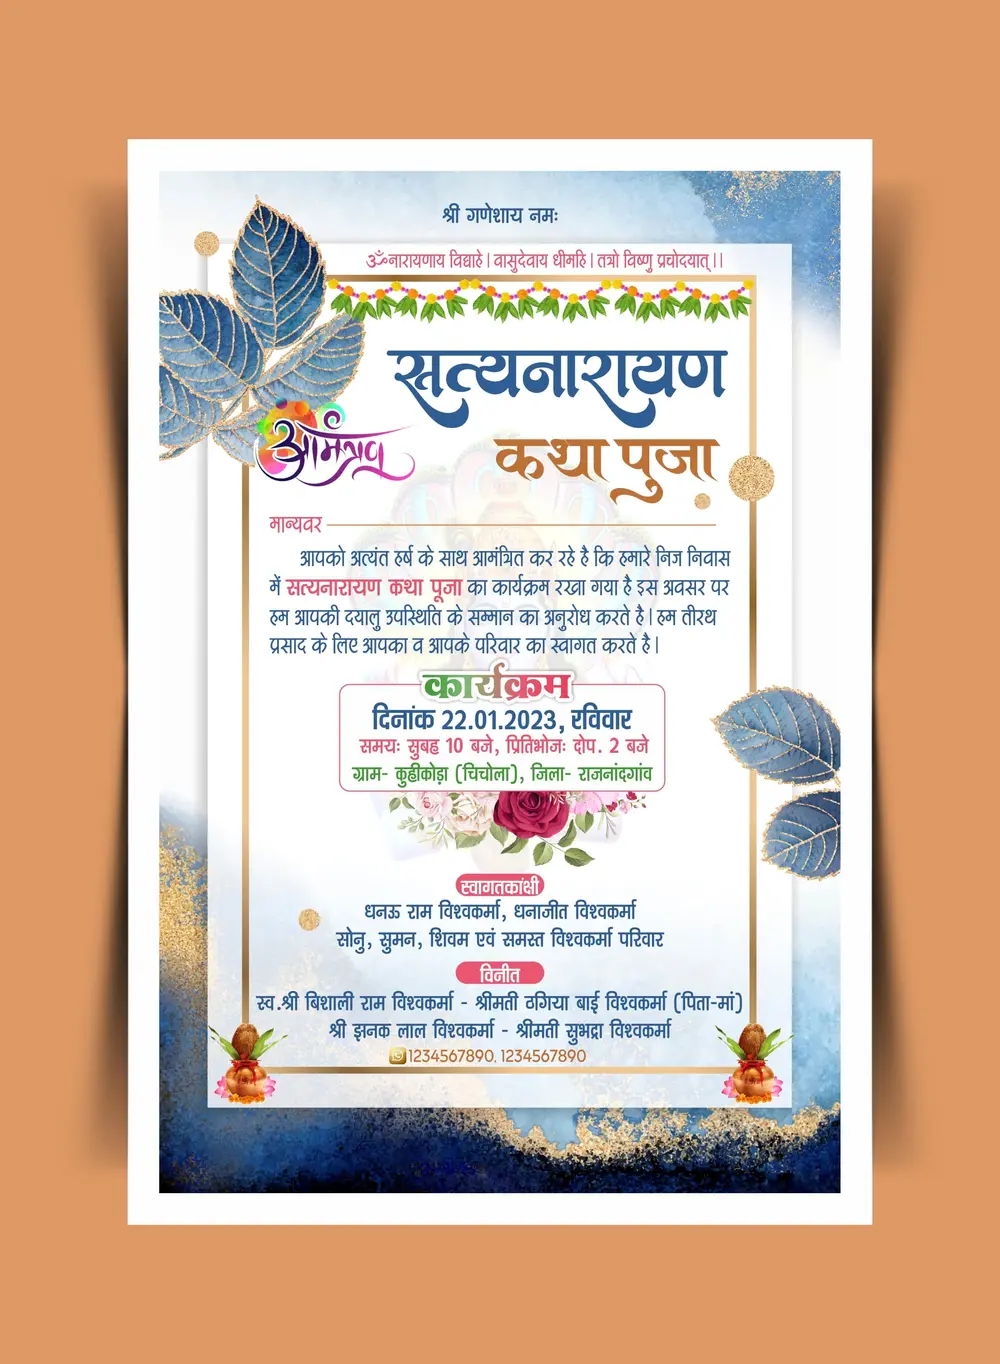 FHD_satyanarayan katha puja hindi invitation card cdr and psd file download_100123